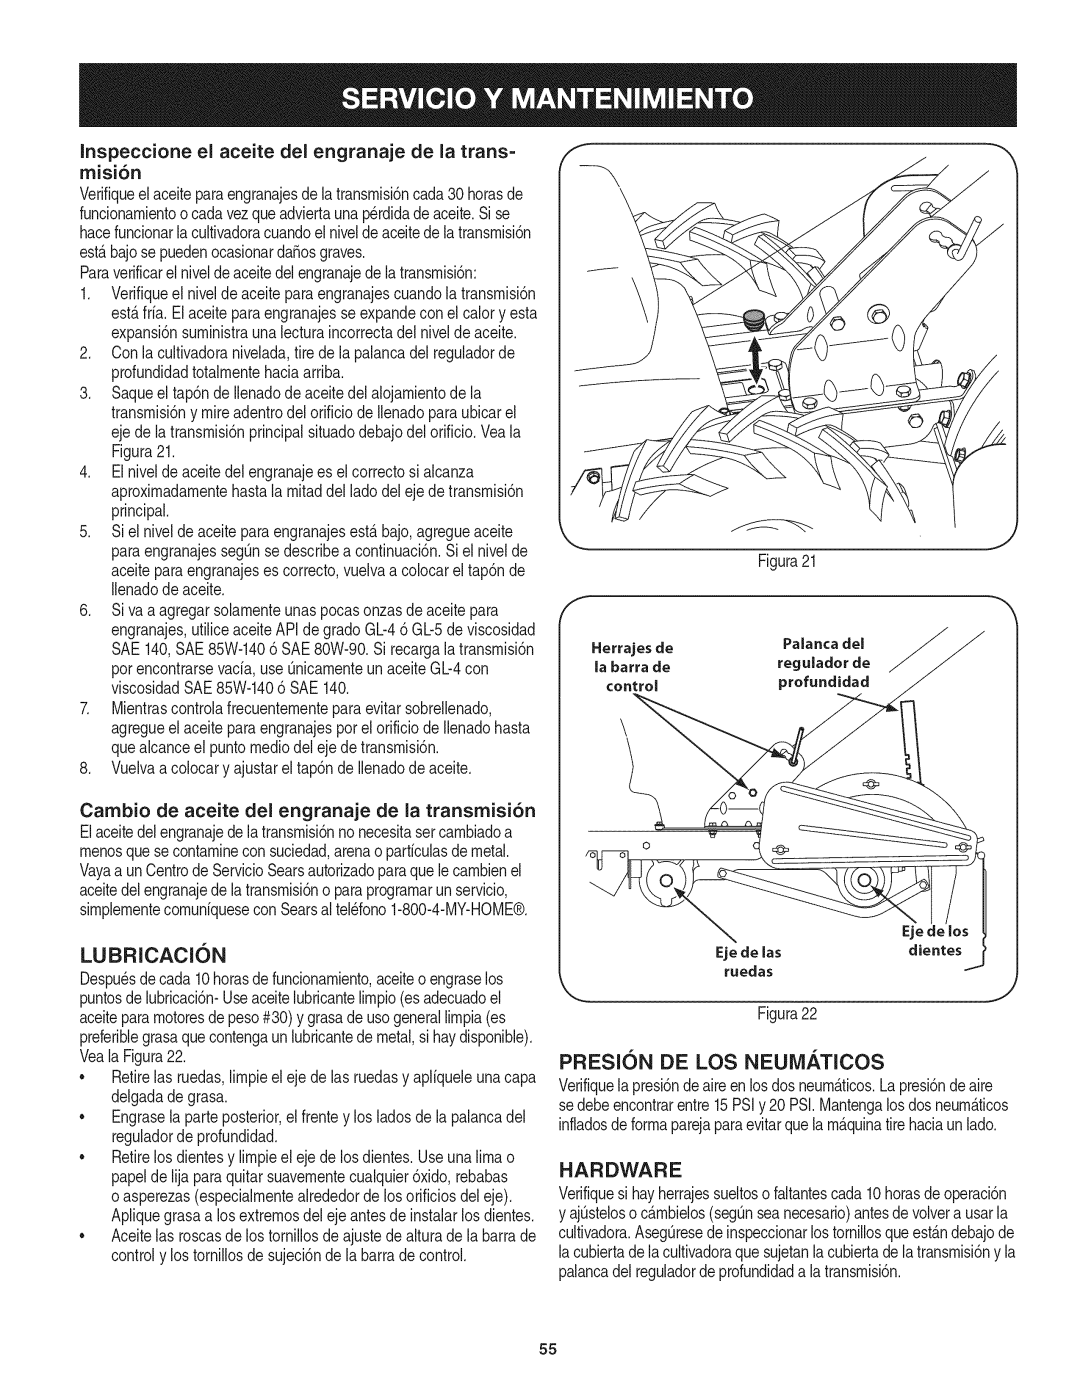 Craftsman 247.29931 manual LUBRICACI6N, PRESlON DE LOS NEUiVl/_.TICOS, Hardware 